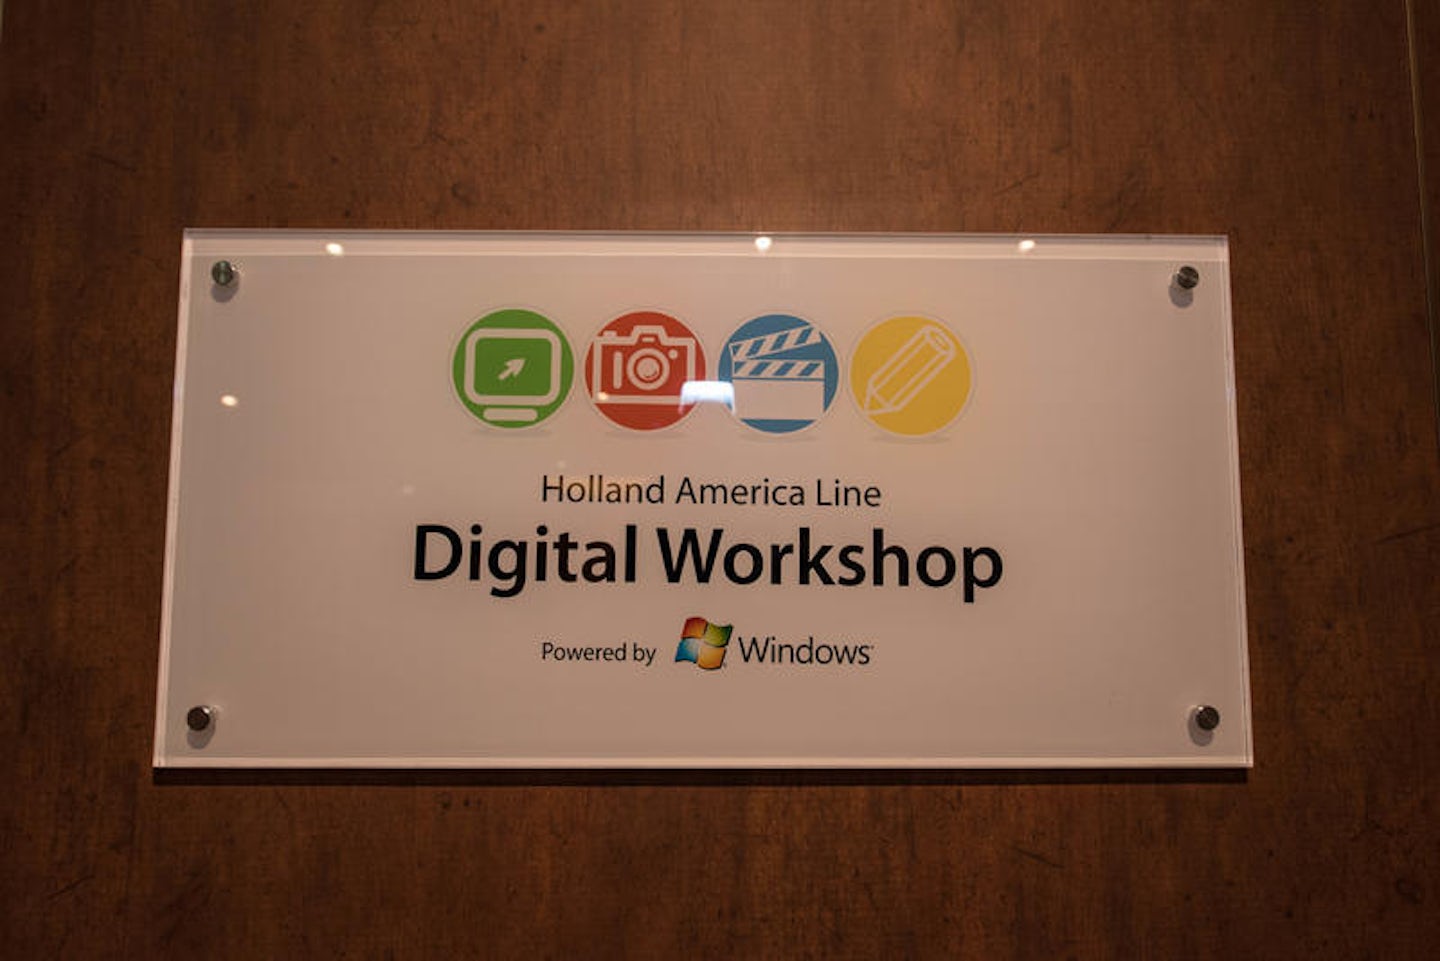 Digital Workshop on Noordam